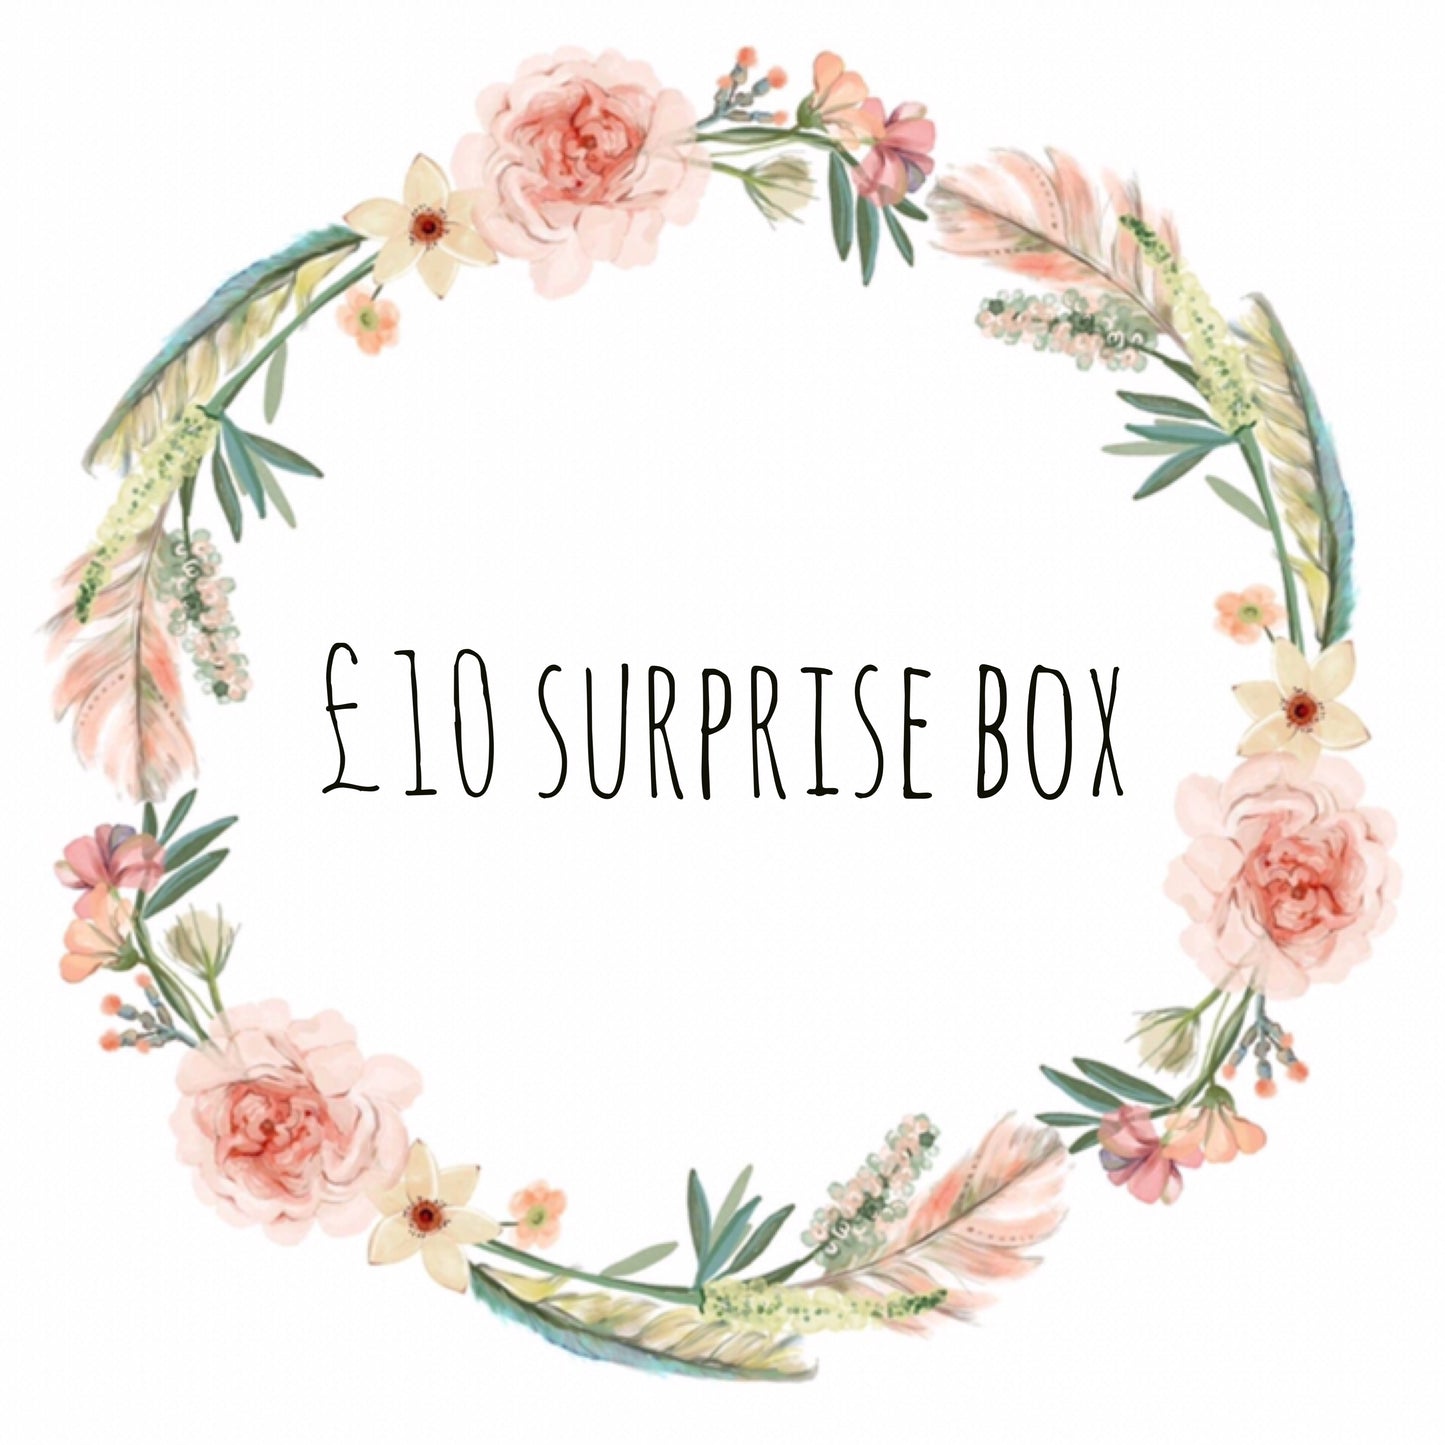 £10 surprise box (1943501340737)